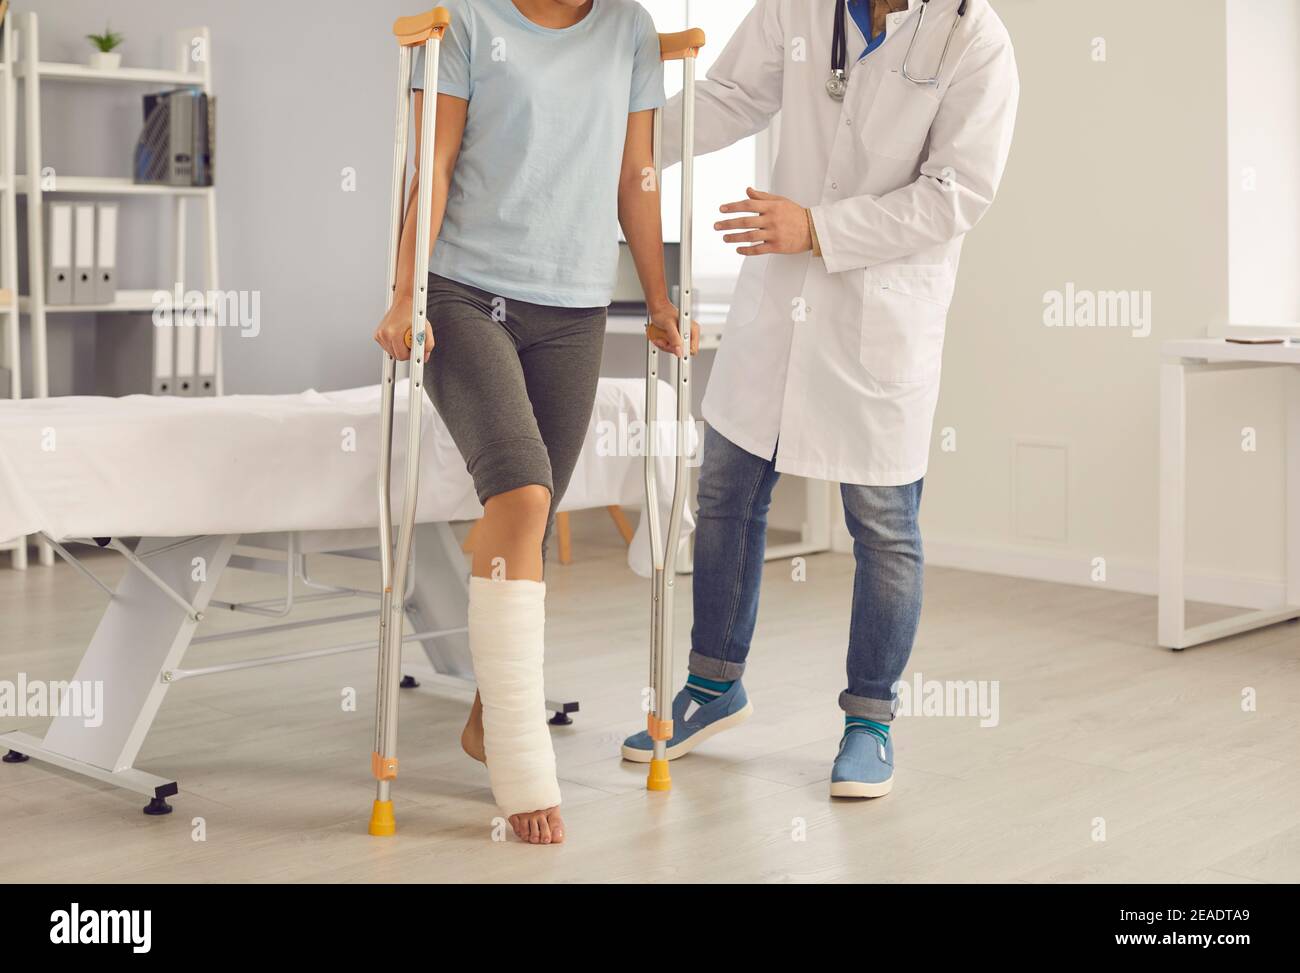 Patient mit gebrochenem Bein beim Gehen mit Krücken, die vom Arzt  unterstützt werden Während des Krankenhausaufenthalts Stockfotografie -  Alamy